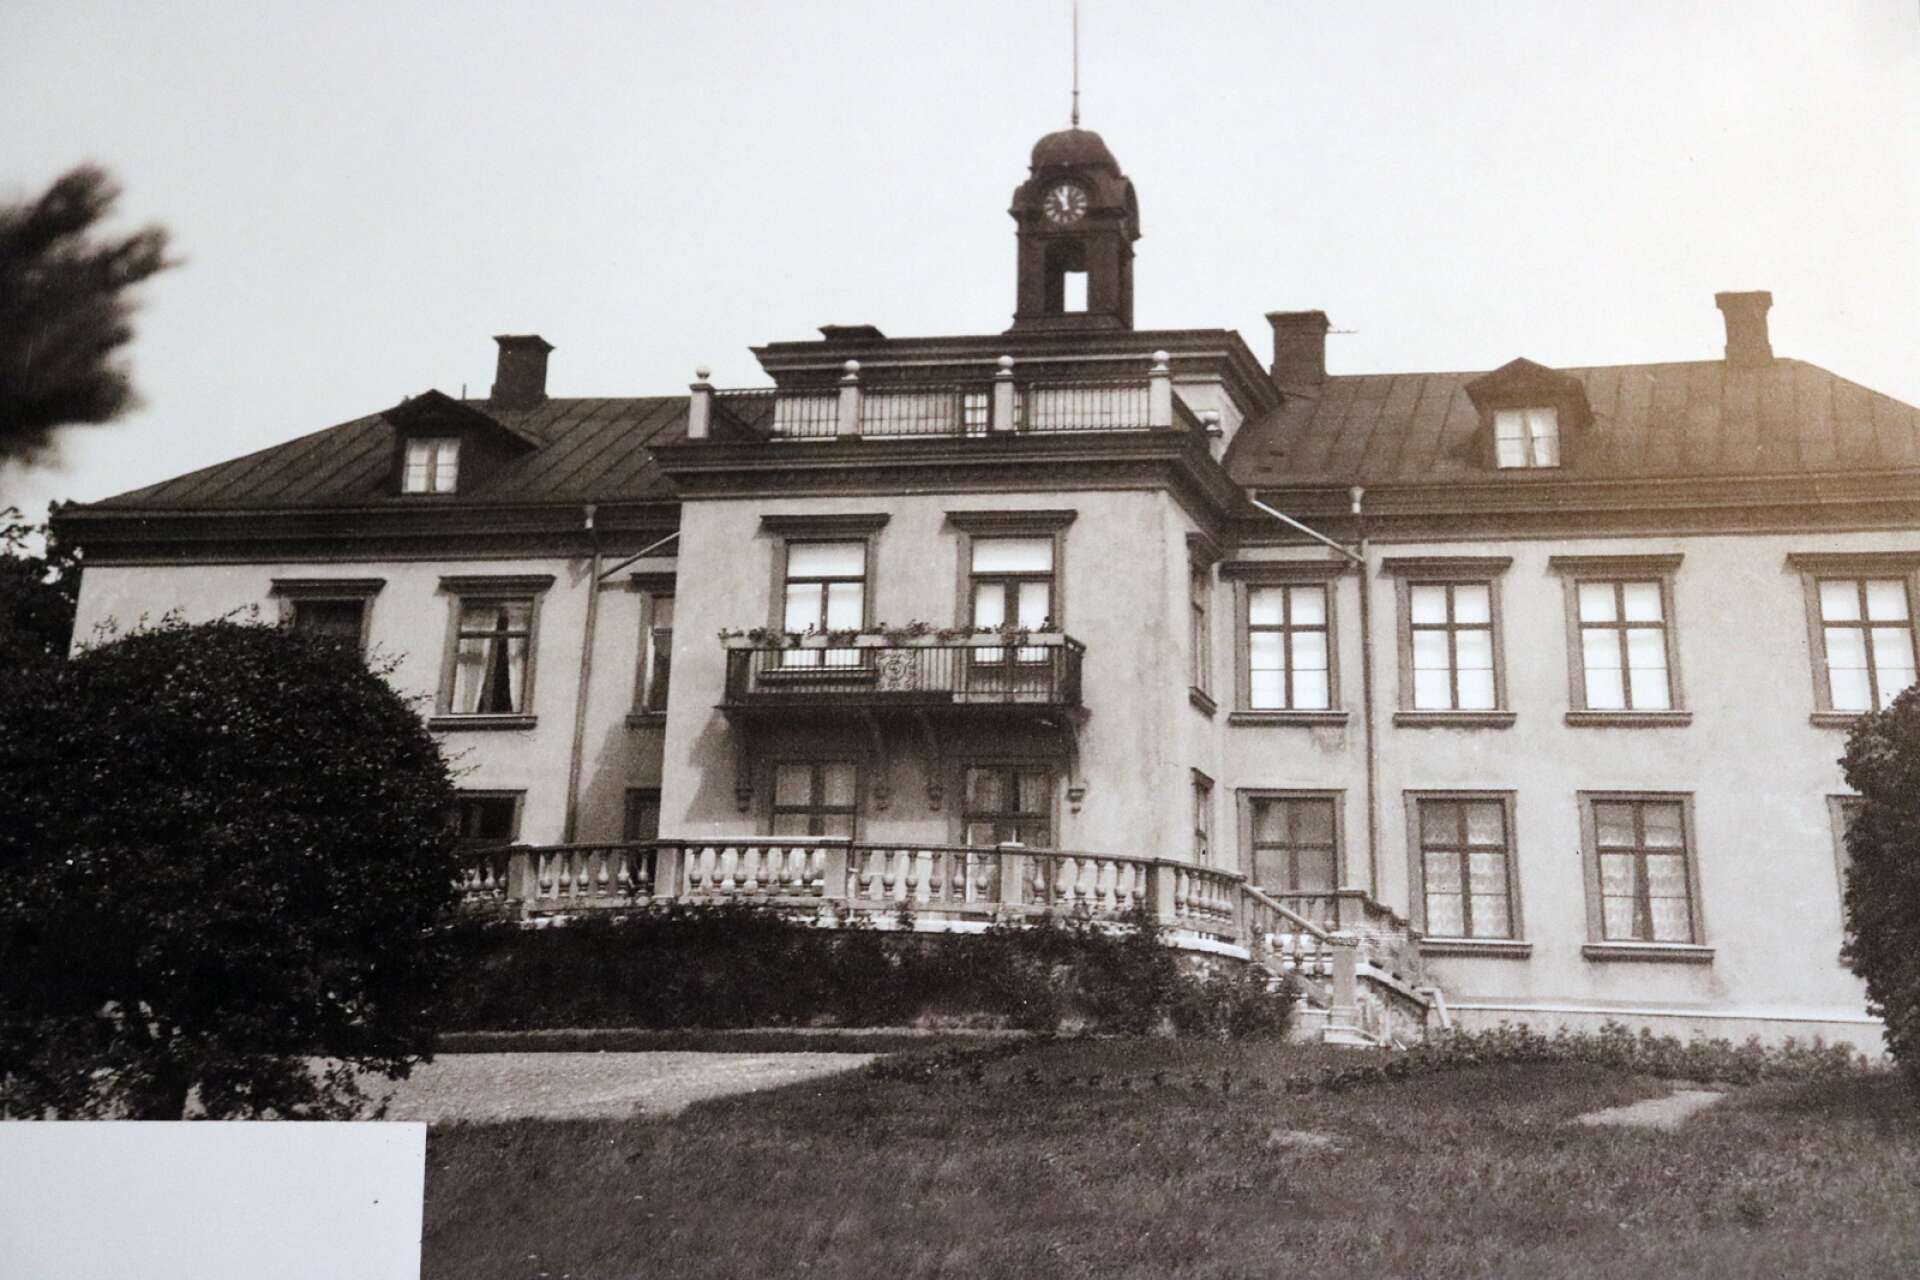  Gustafsviks herrgård innan den brann ned 1967.